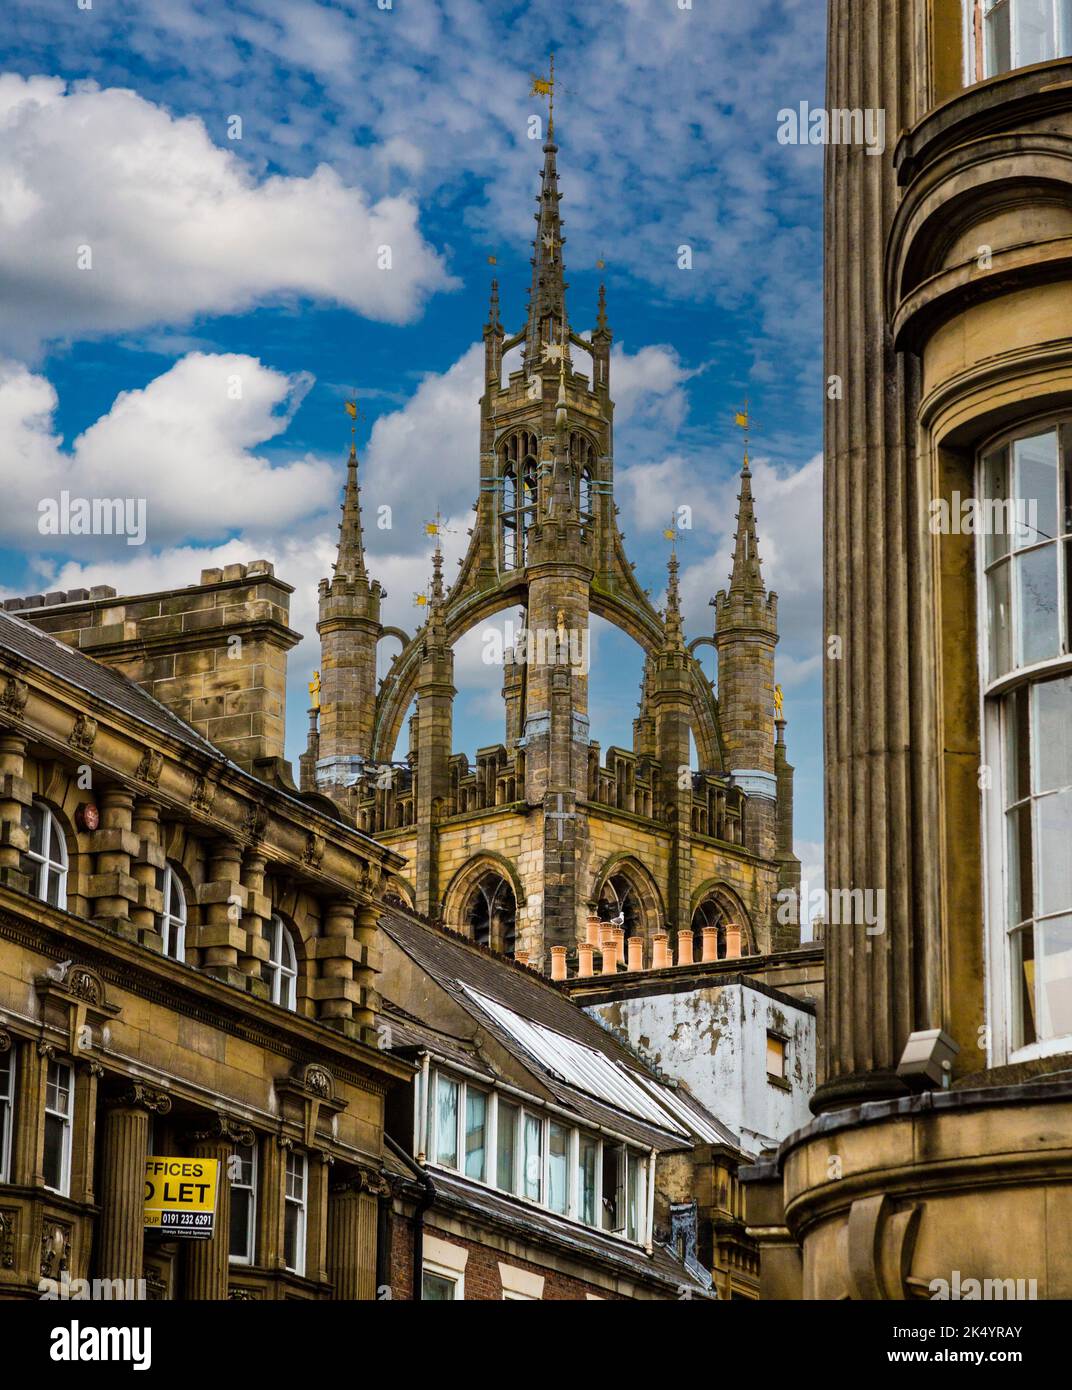 Newcastle-upon-Tyne, Angleterre, Royaume-Uni. Des flèches de la cathédrale de l'église de Saint-Nicolas. La lanterne spire date du 15ème. siècle. Banque D'Images